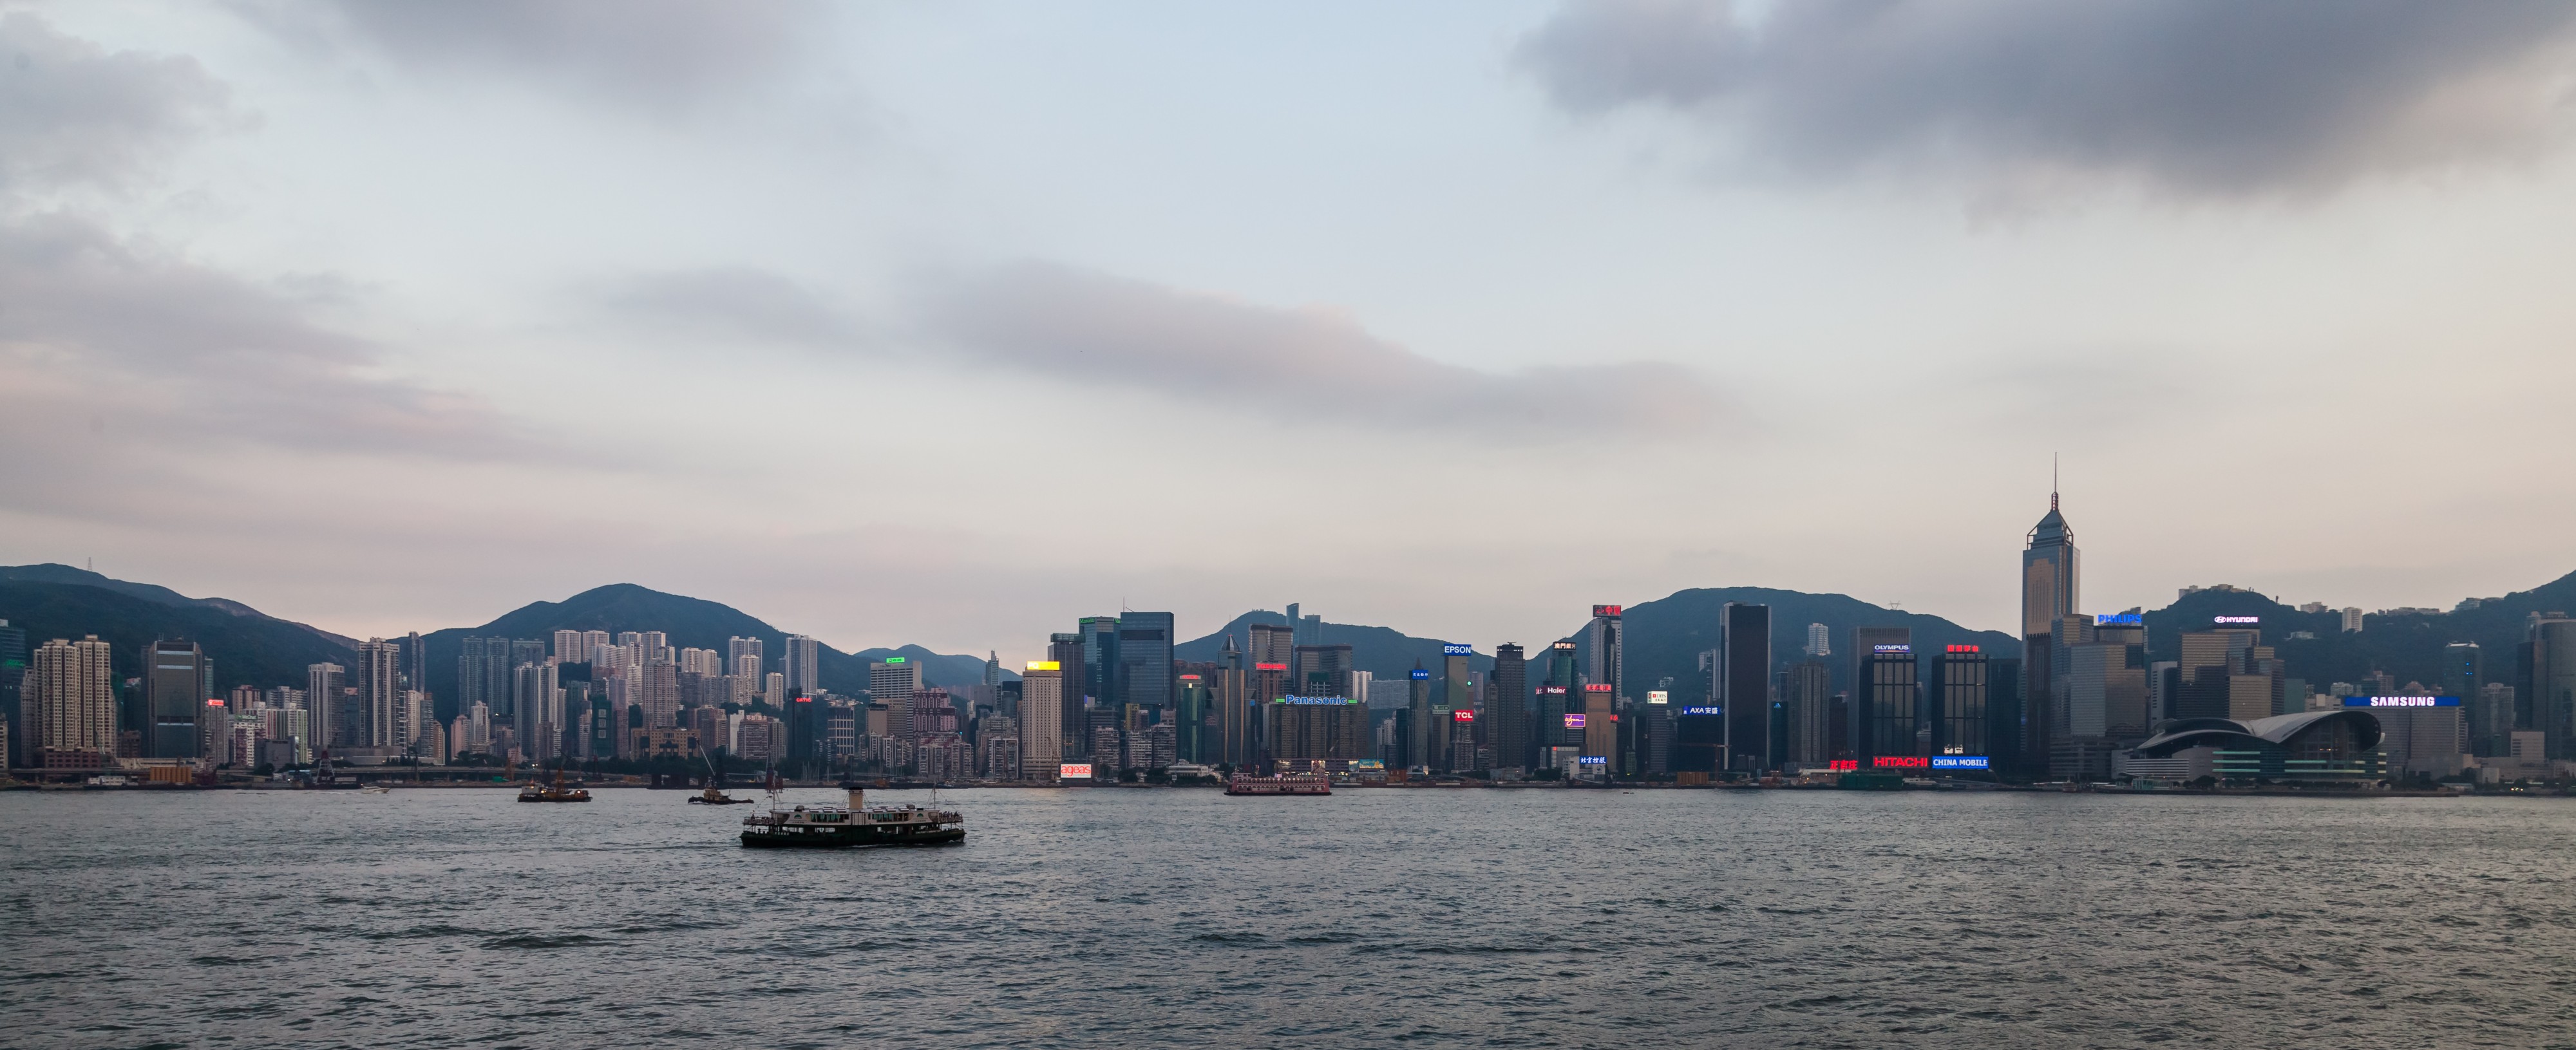 Vista del Puerto de Victoria desde Kowloon, Hong Kong, 2013-08-11, DD 02